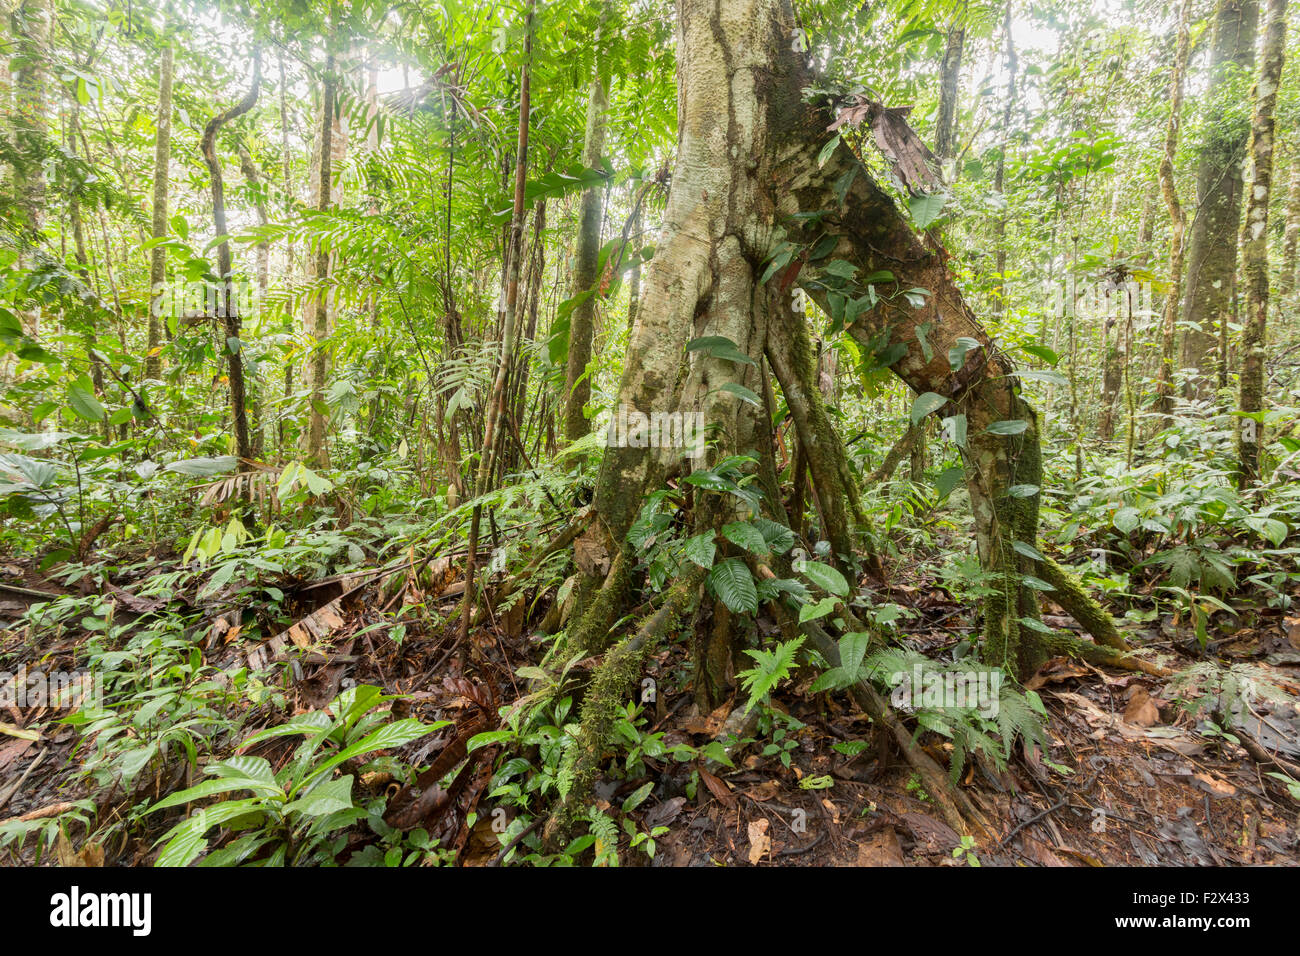 Cecropia Baum, ein Sekundärwald Arten, mit Stelzen Wurzeln. Im ecuadorianischen Amazonasgebiet. HDR-Bild Stockfoto